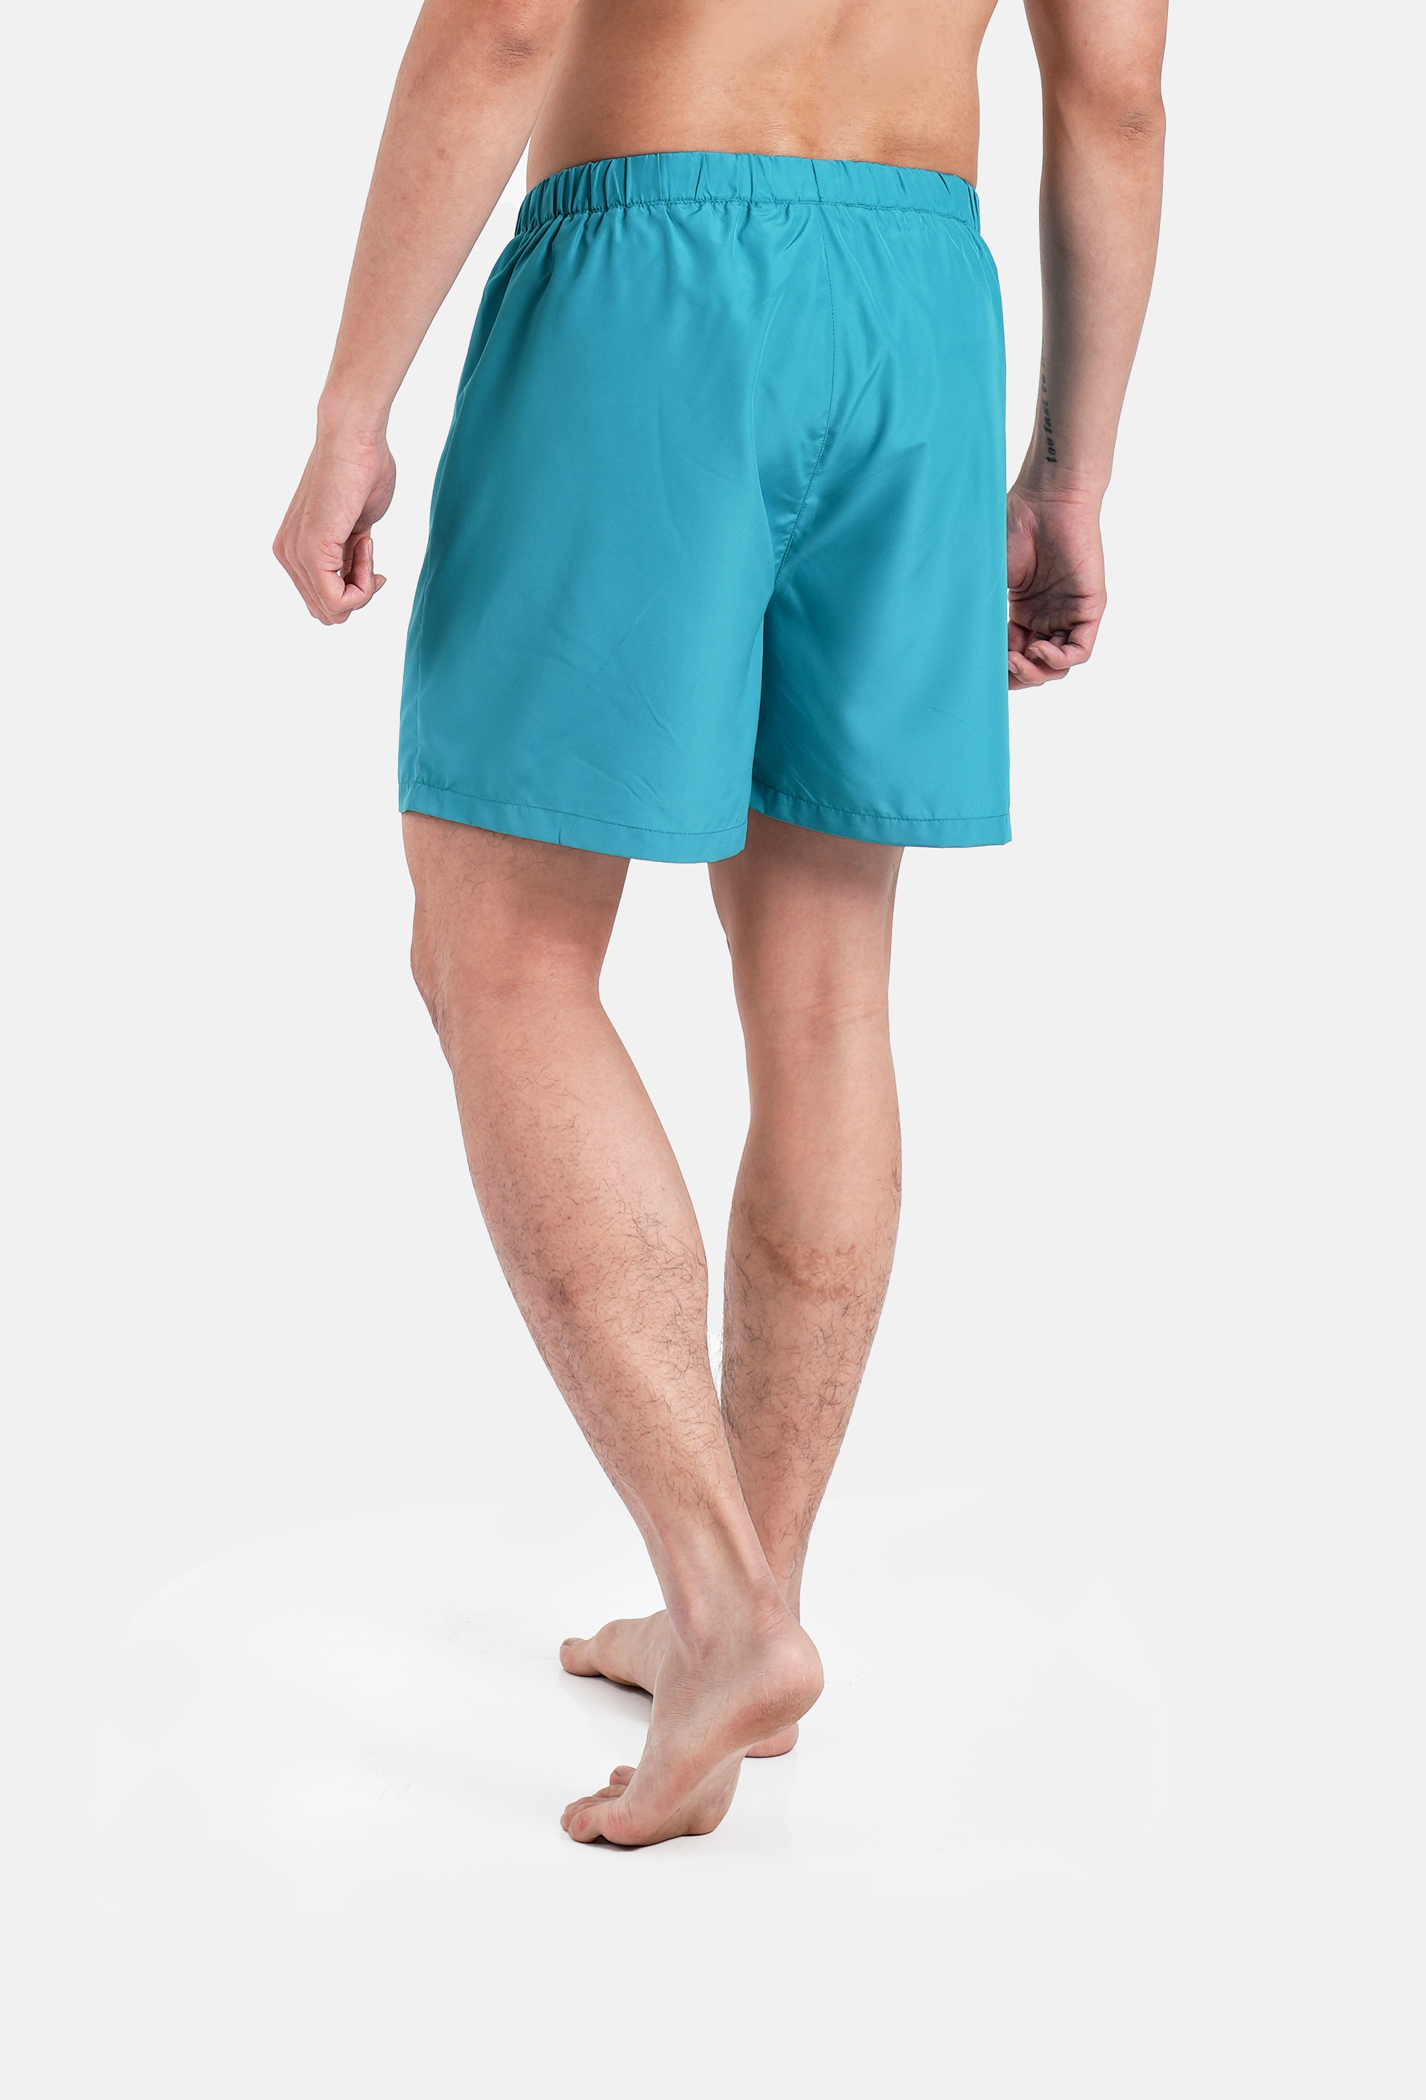 FLASH SALE - Quần Shorts mặc nhà Coolmate Basics  Xanh ngọc 3